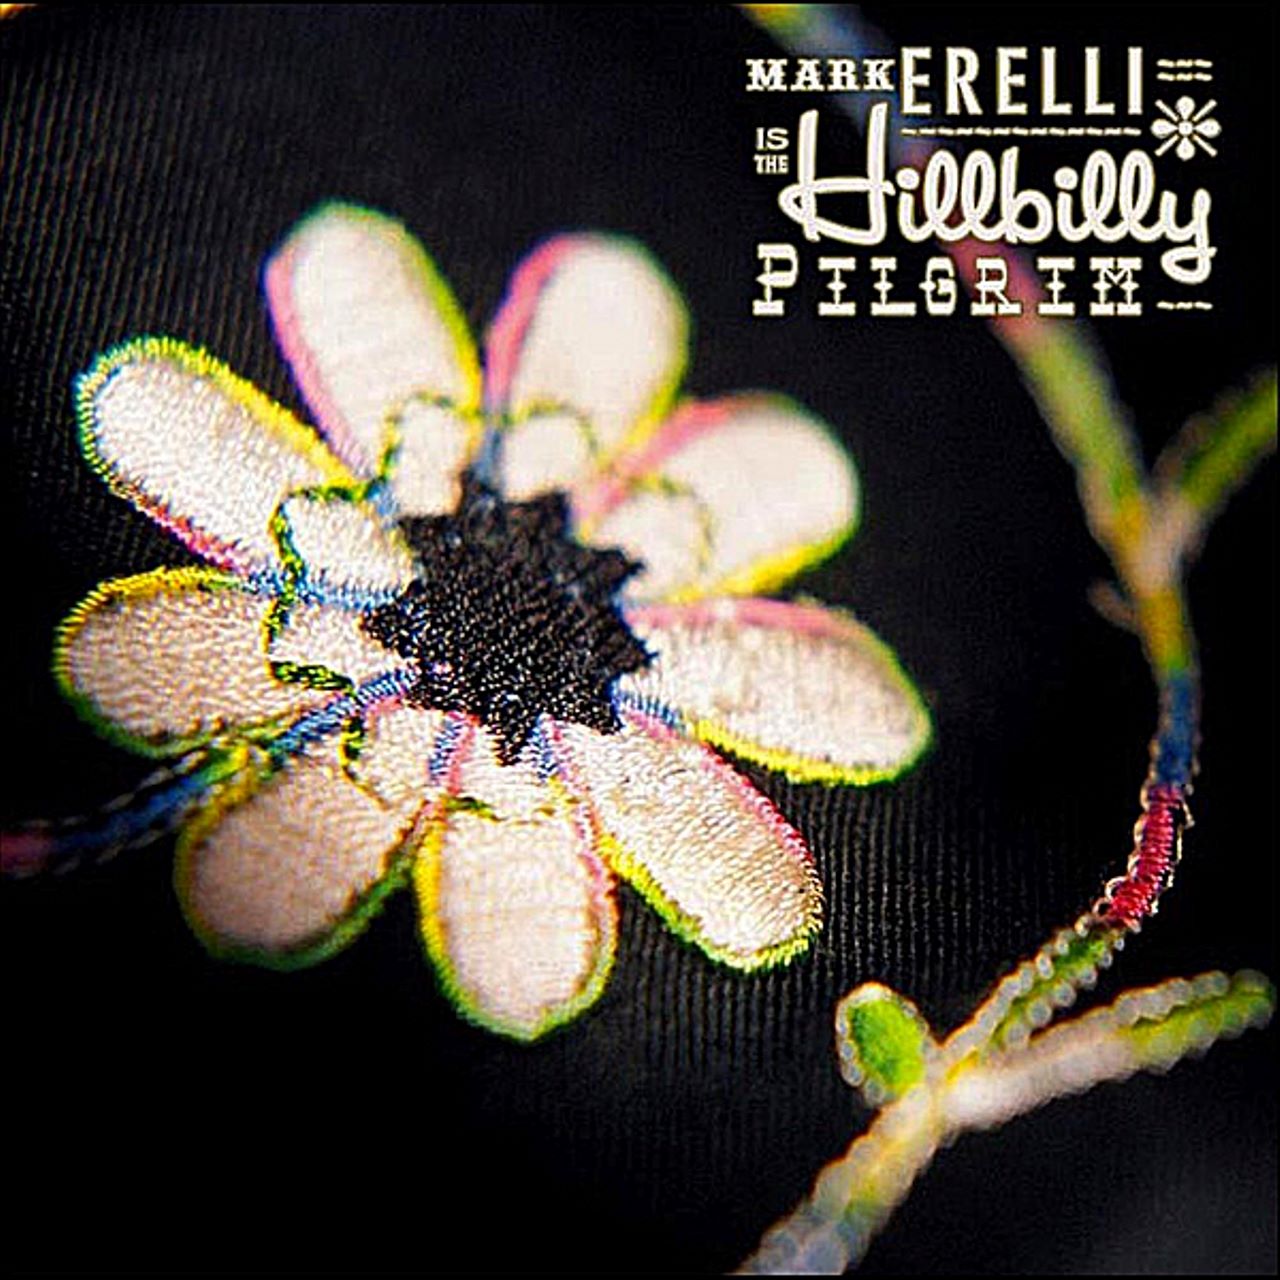 Mark Erelli - Hillbilly Pilgrim cover album